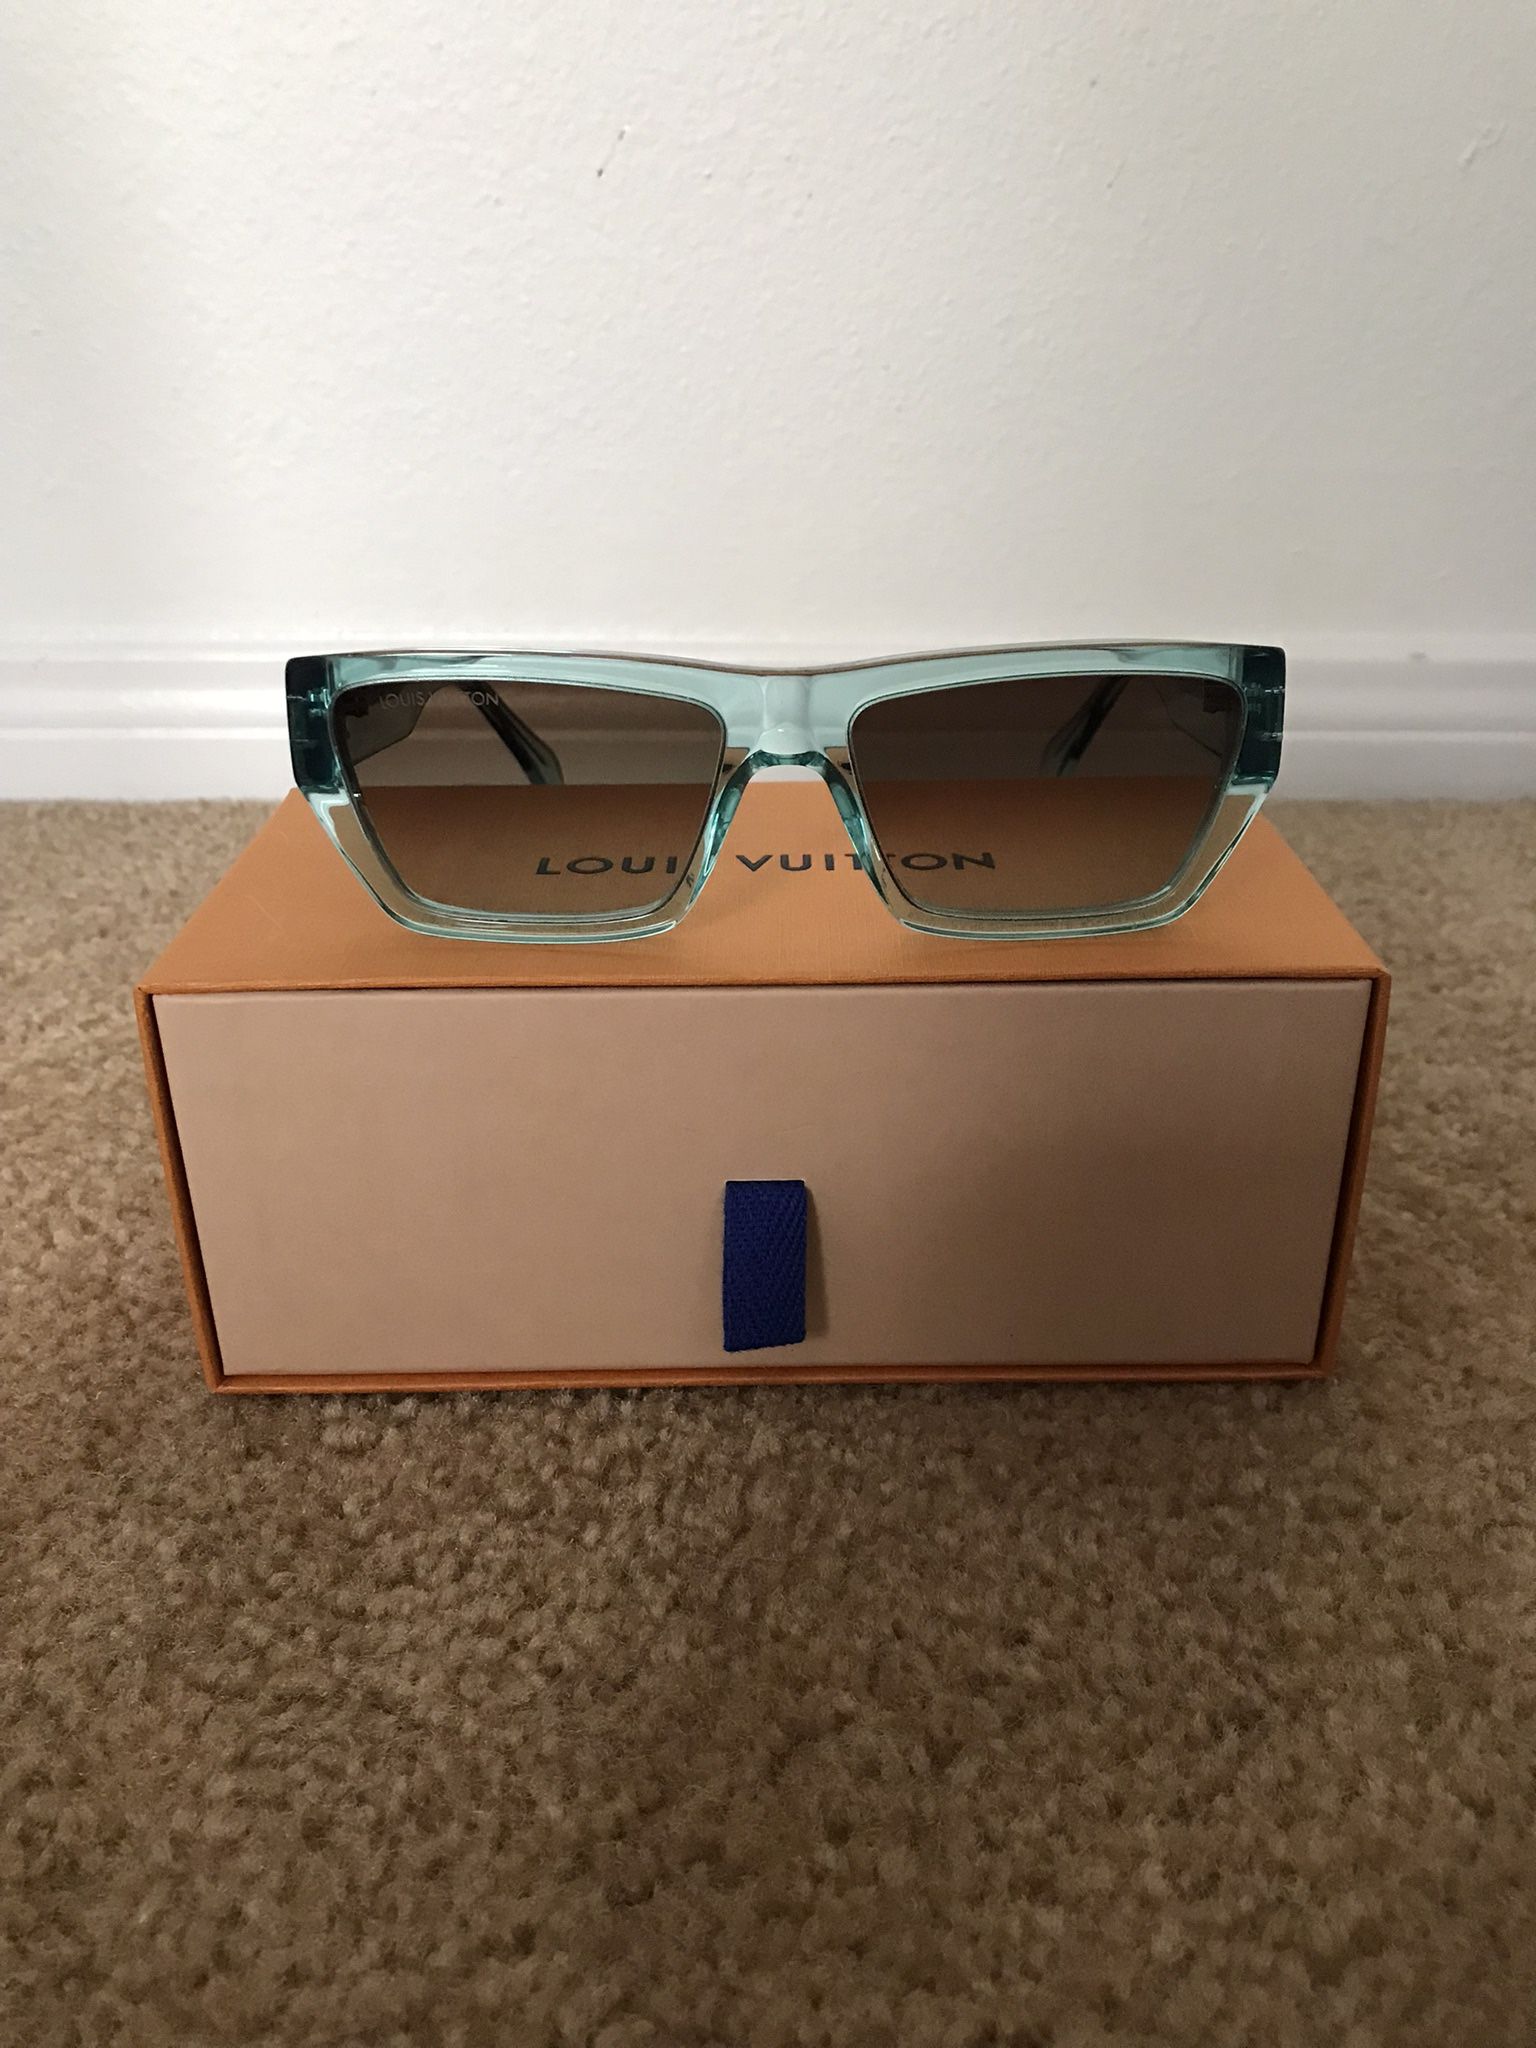 Louis Vuitton, Accessories, Louie Vuitton Square Monogram Sunglasses